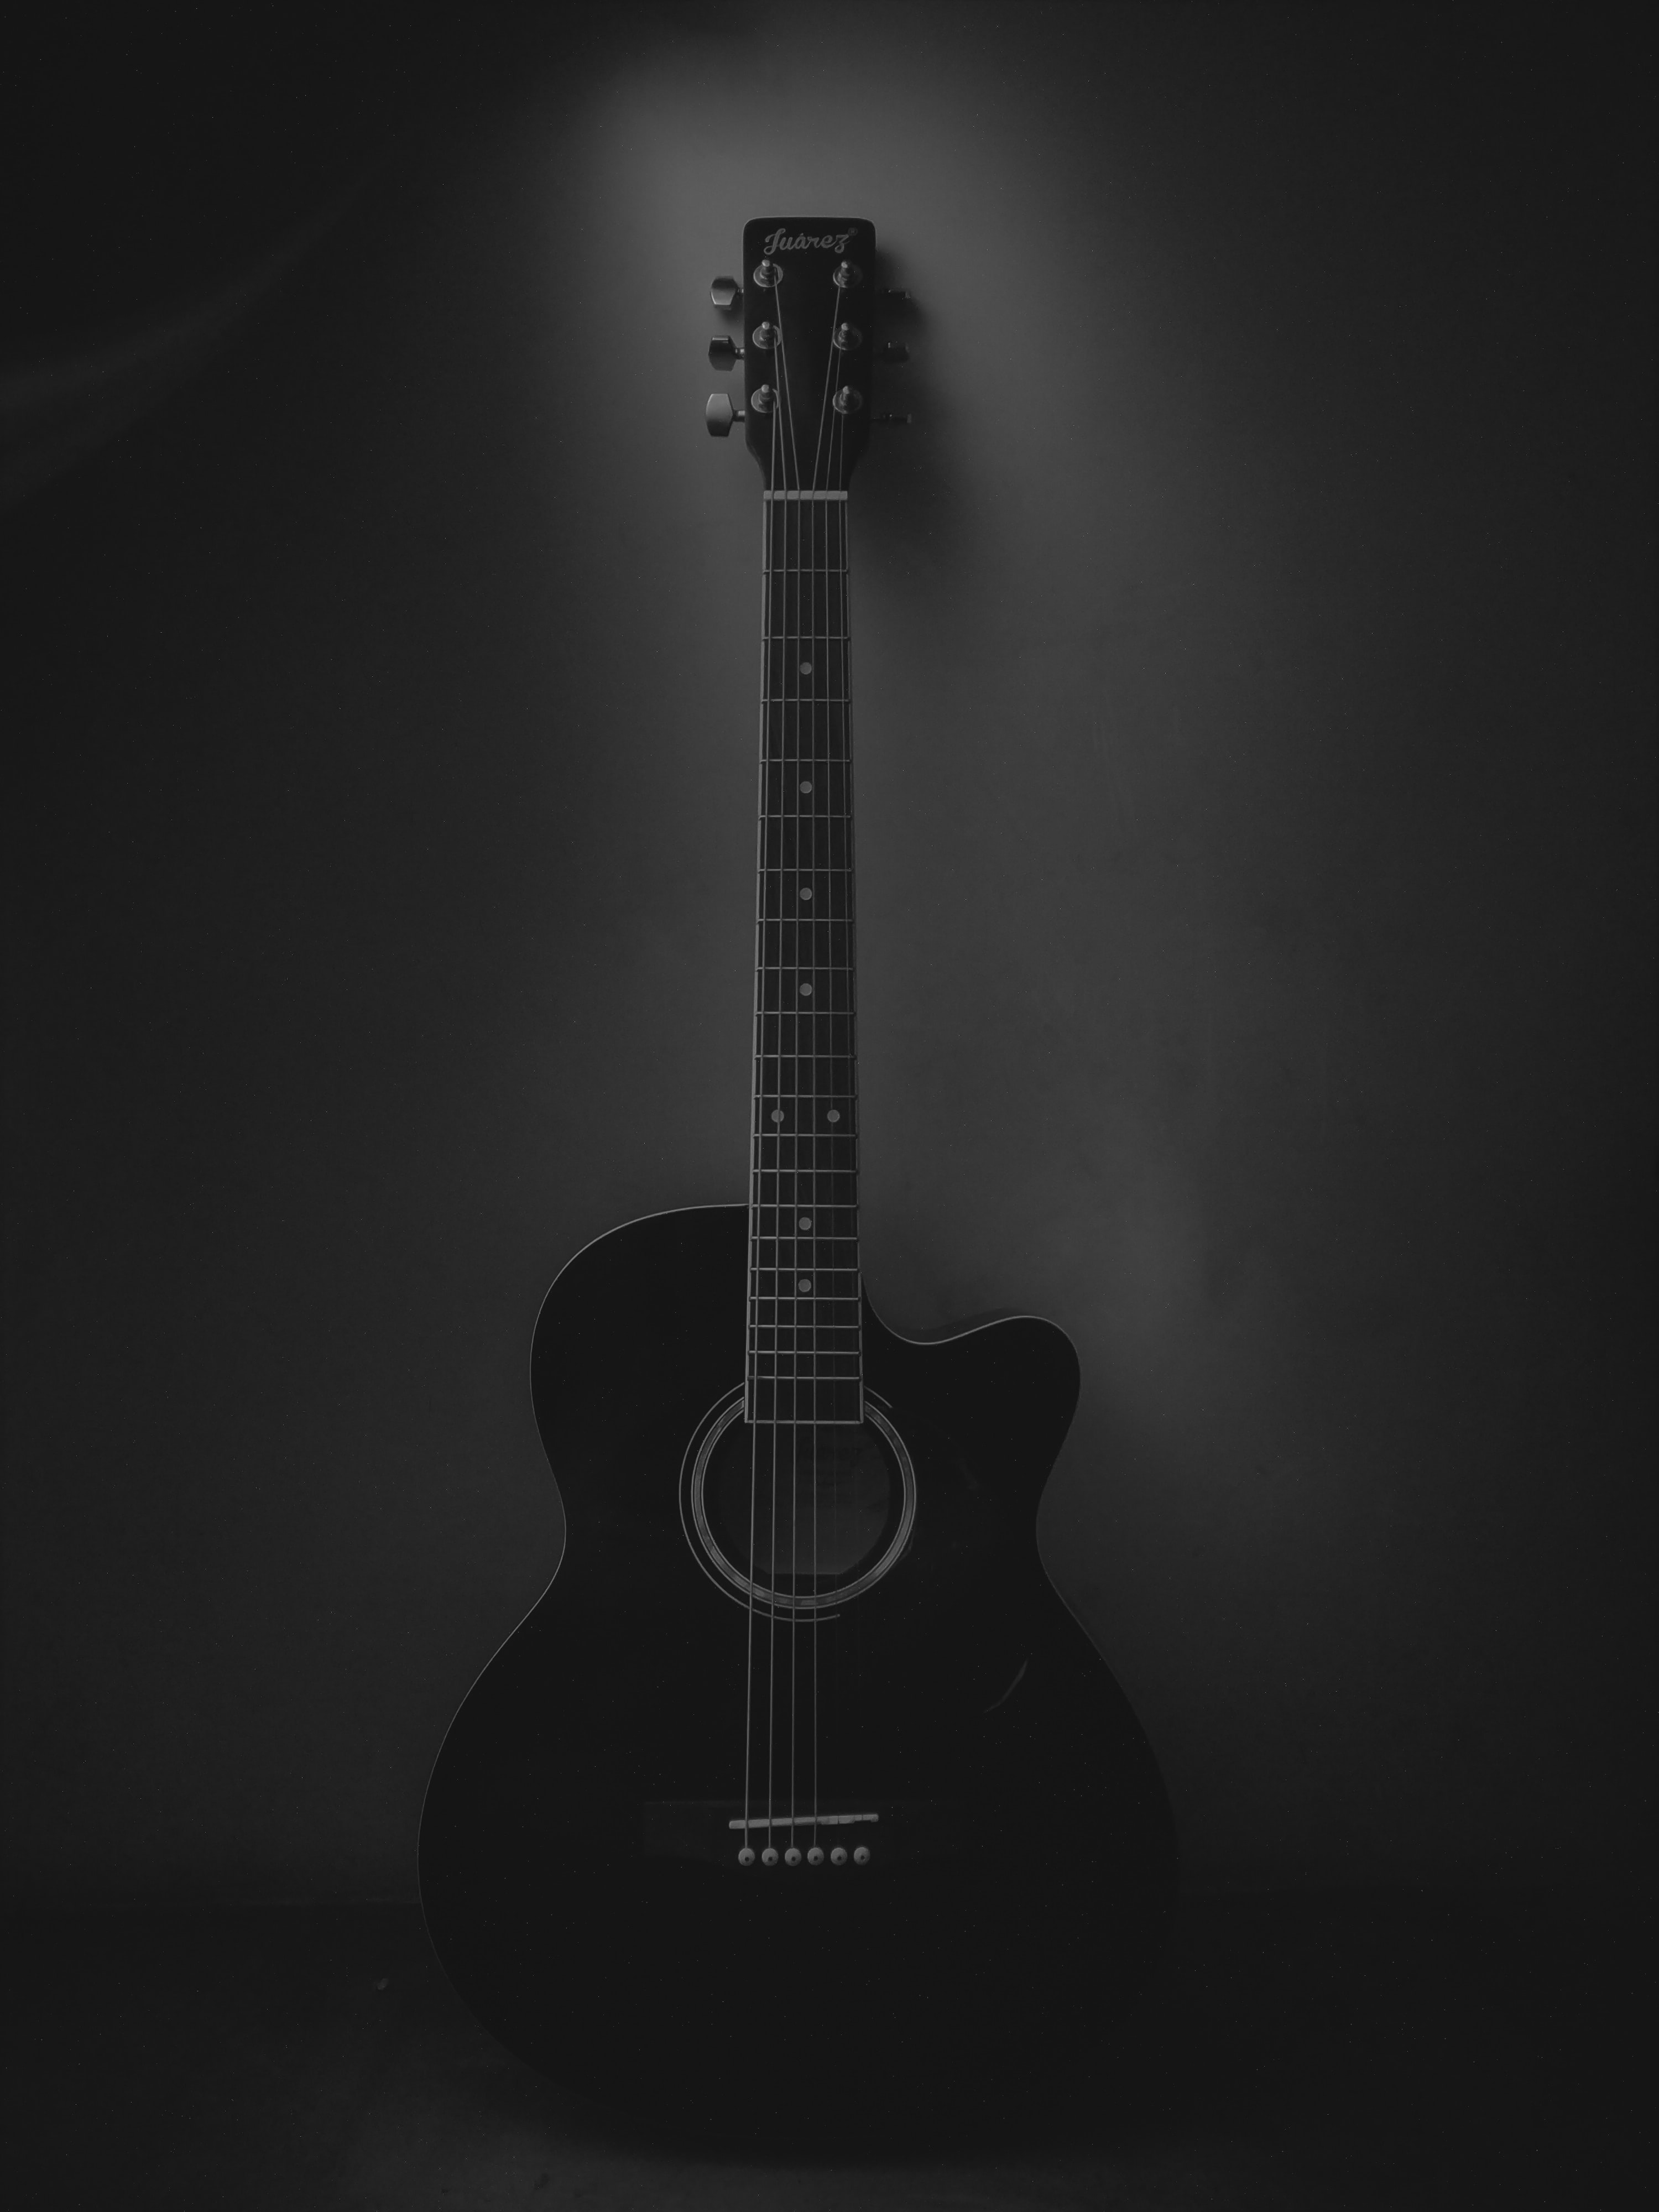 dark, black, guitar, music, acoustic guitar, musical instrument